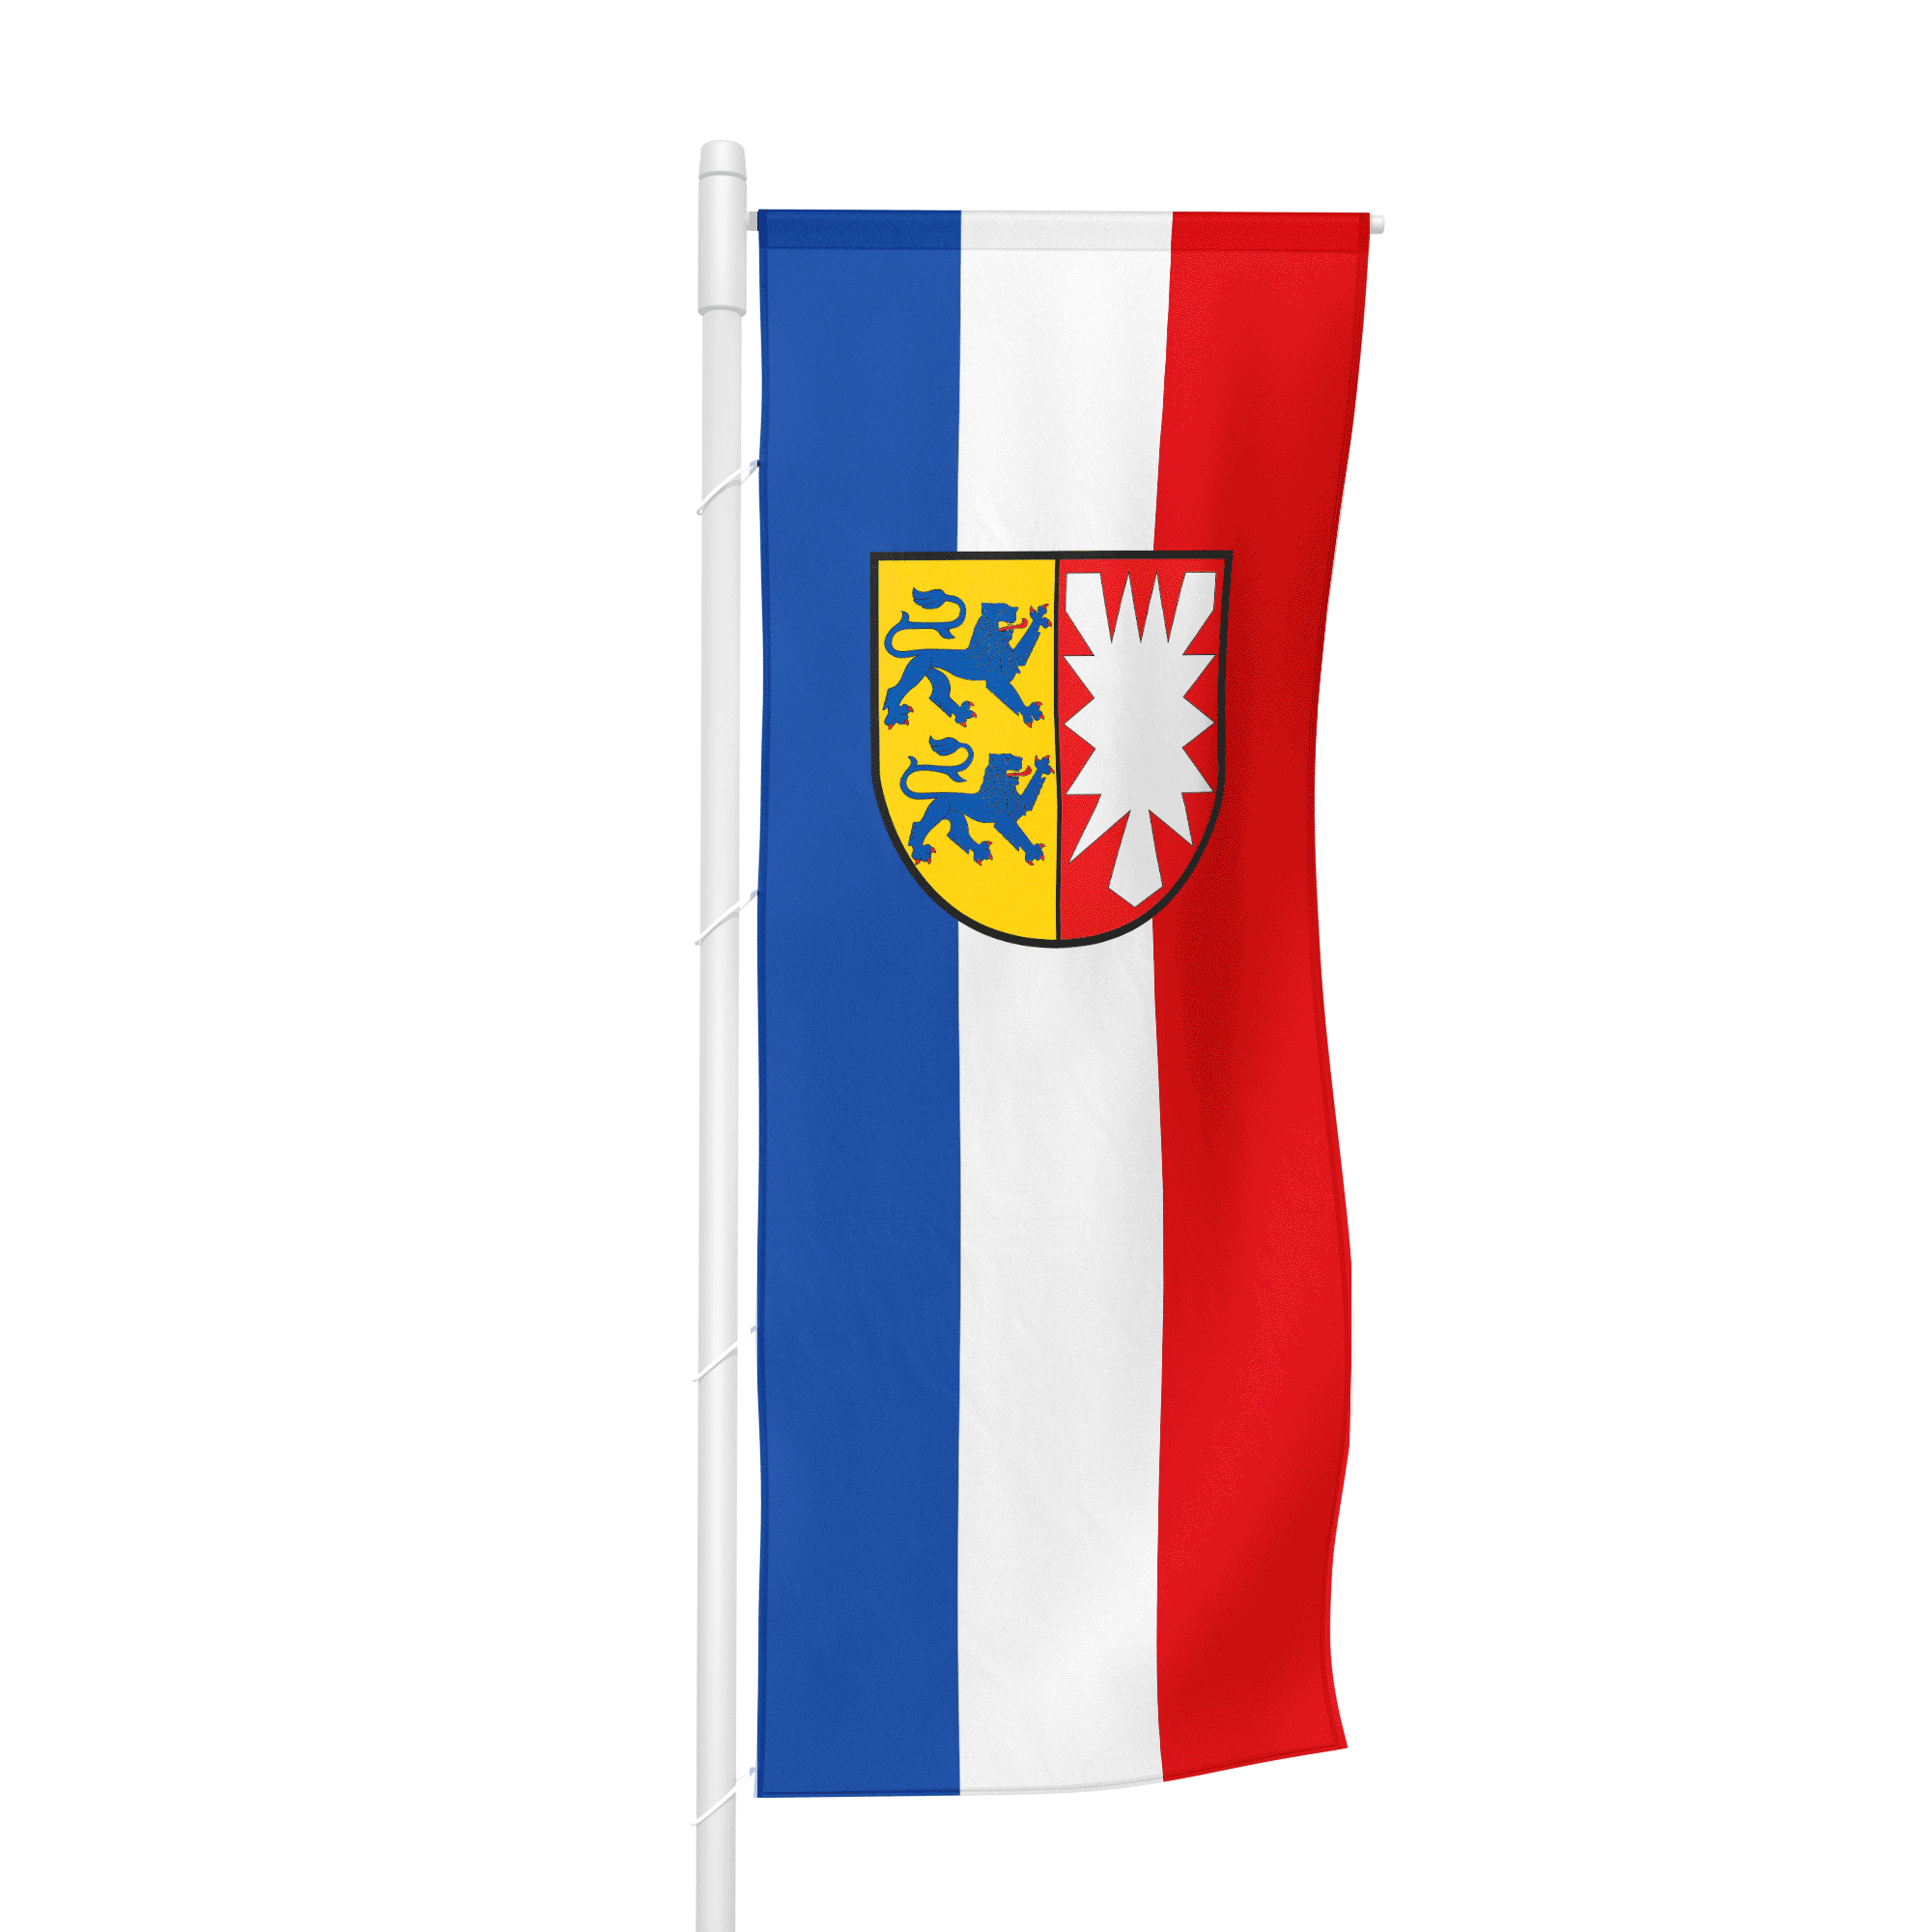 Schleswig-Holstein (Bürgerflagge) - Hochformatfahne